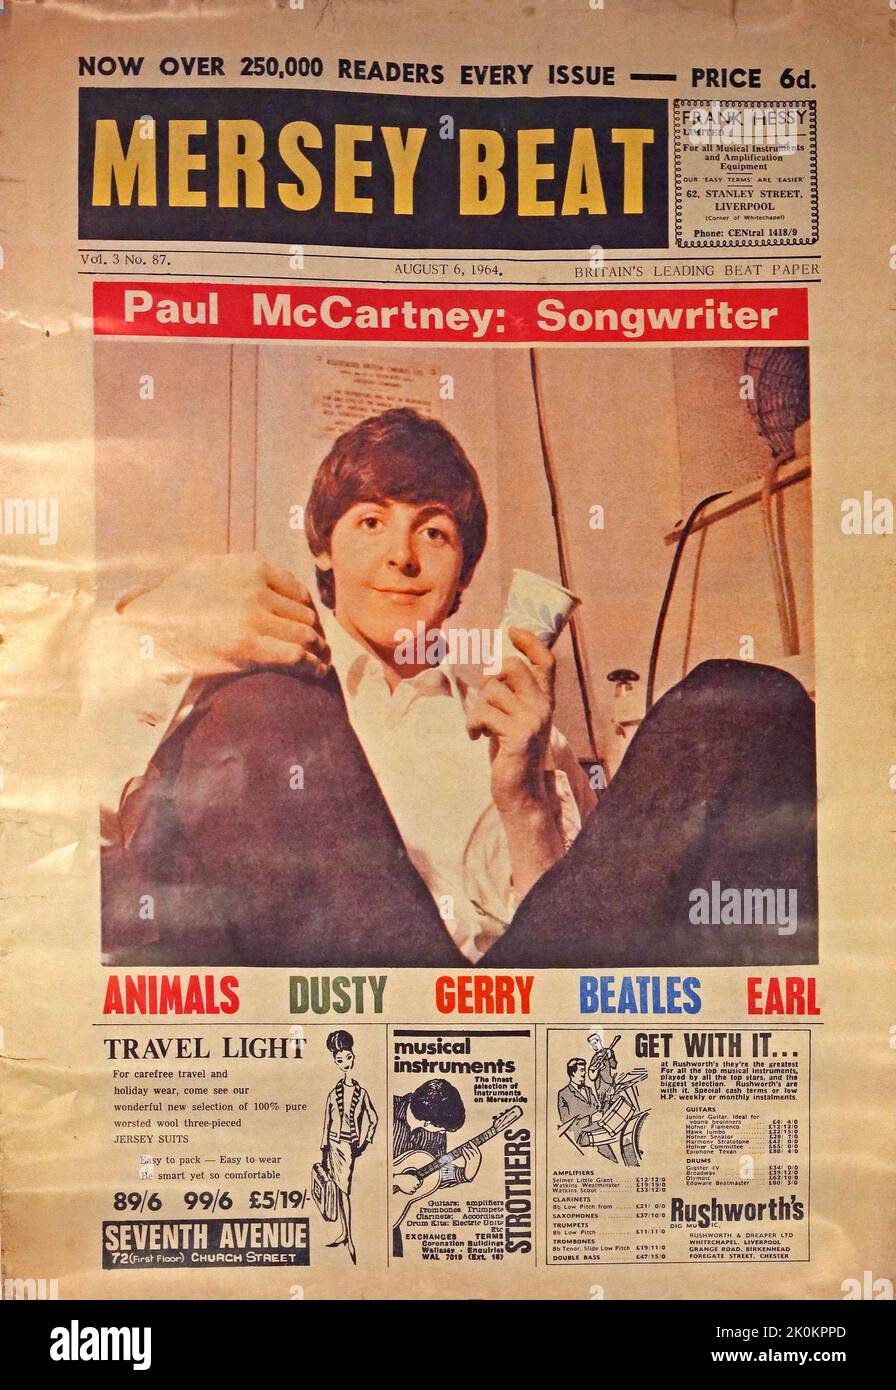 Paul McCartney Songwriter, auf dem Cover des Mersey Beat Magazins, 06. August 1964 von Bill Harry Stockfoto